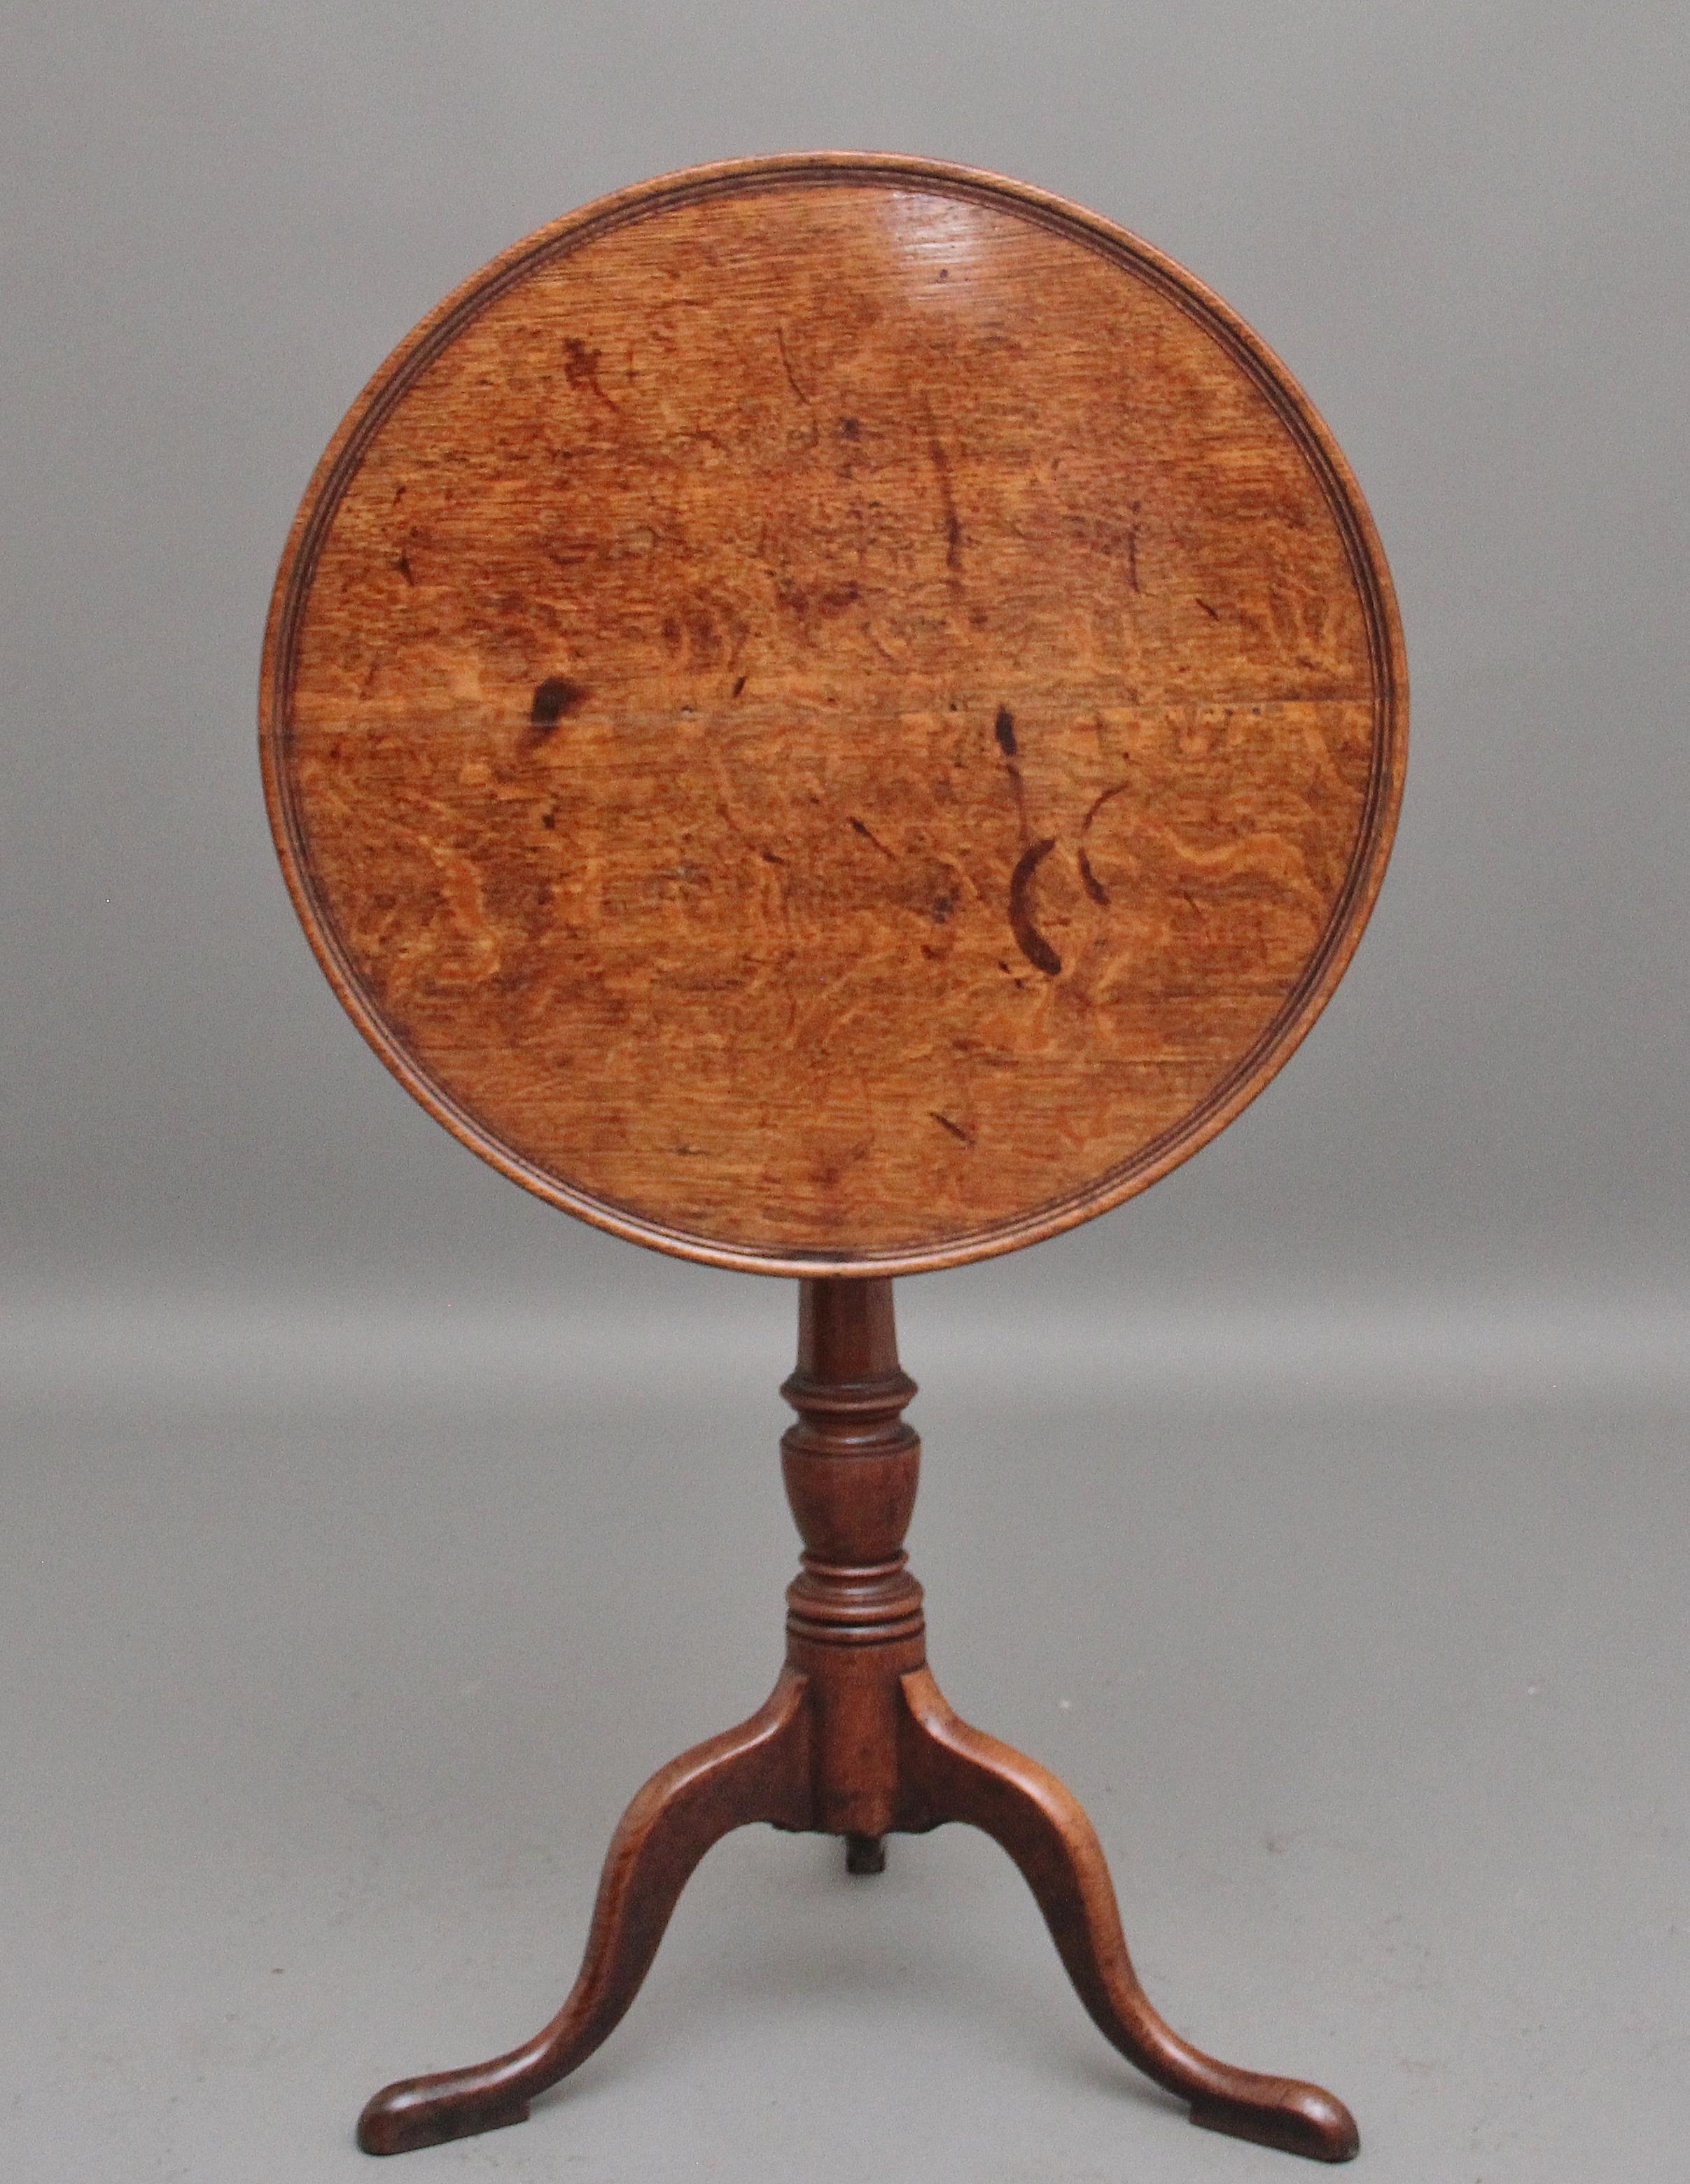 Wein-/Dreibeintisch aus Eichenholz aus dem 18. Jahrhundert mit einer runden gewölbten Platte, die auf einer eleganten gedrechselten Säule mit drei schlanken, geformten Beinen ruht.  Circa 1770.
 